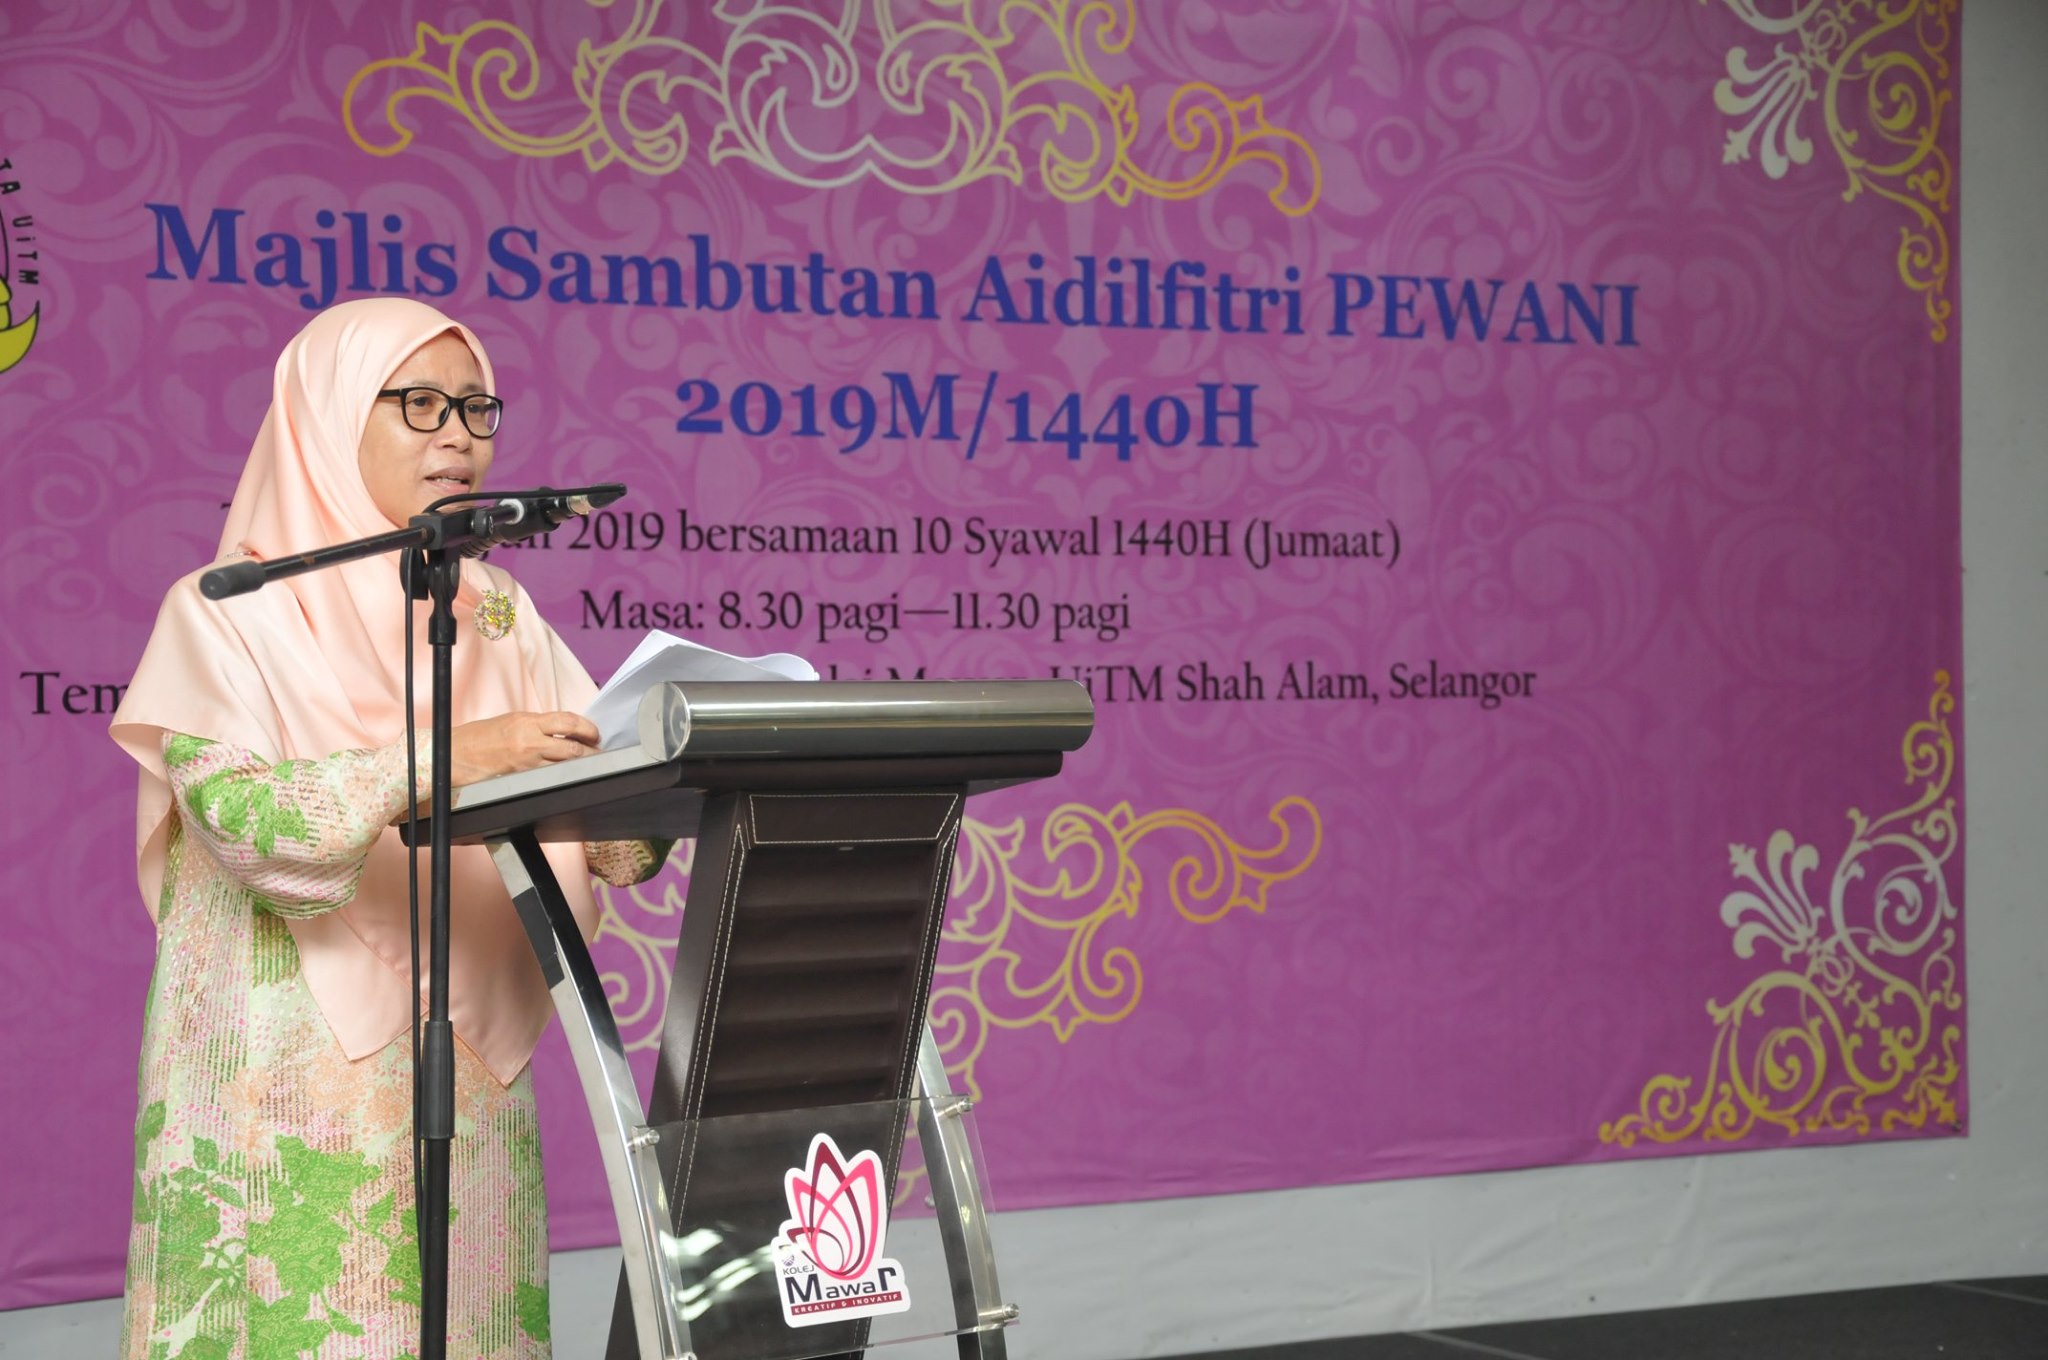 Majlis Sambutan Aidilfitri PEWANI Selangor 2019 